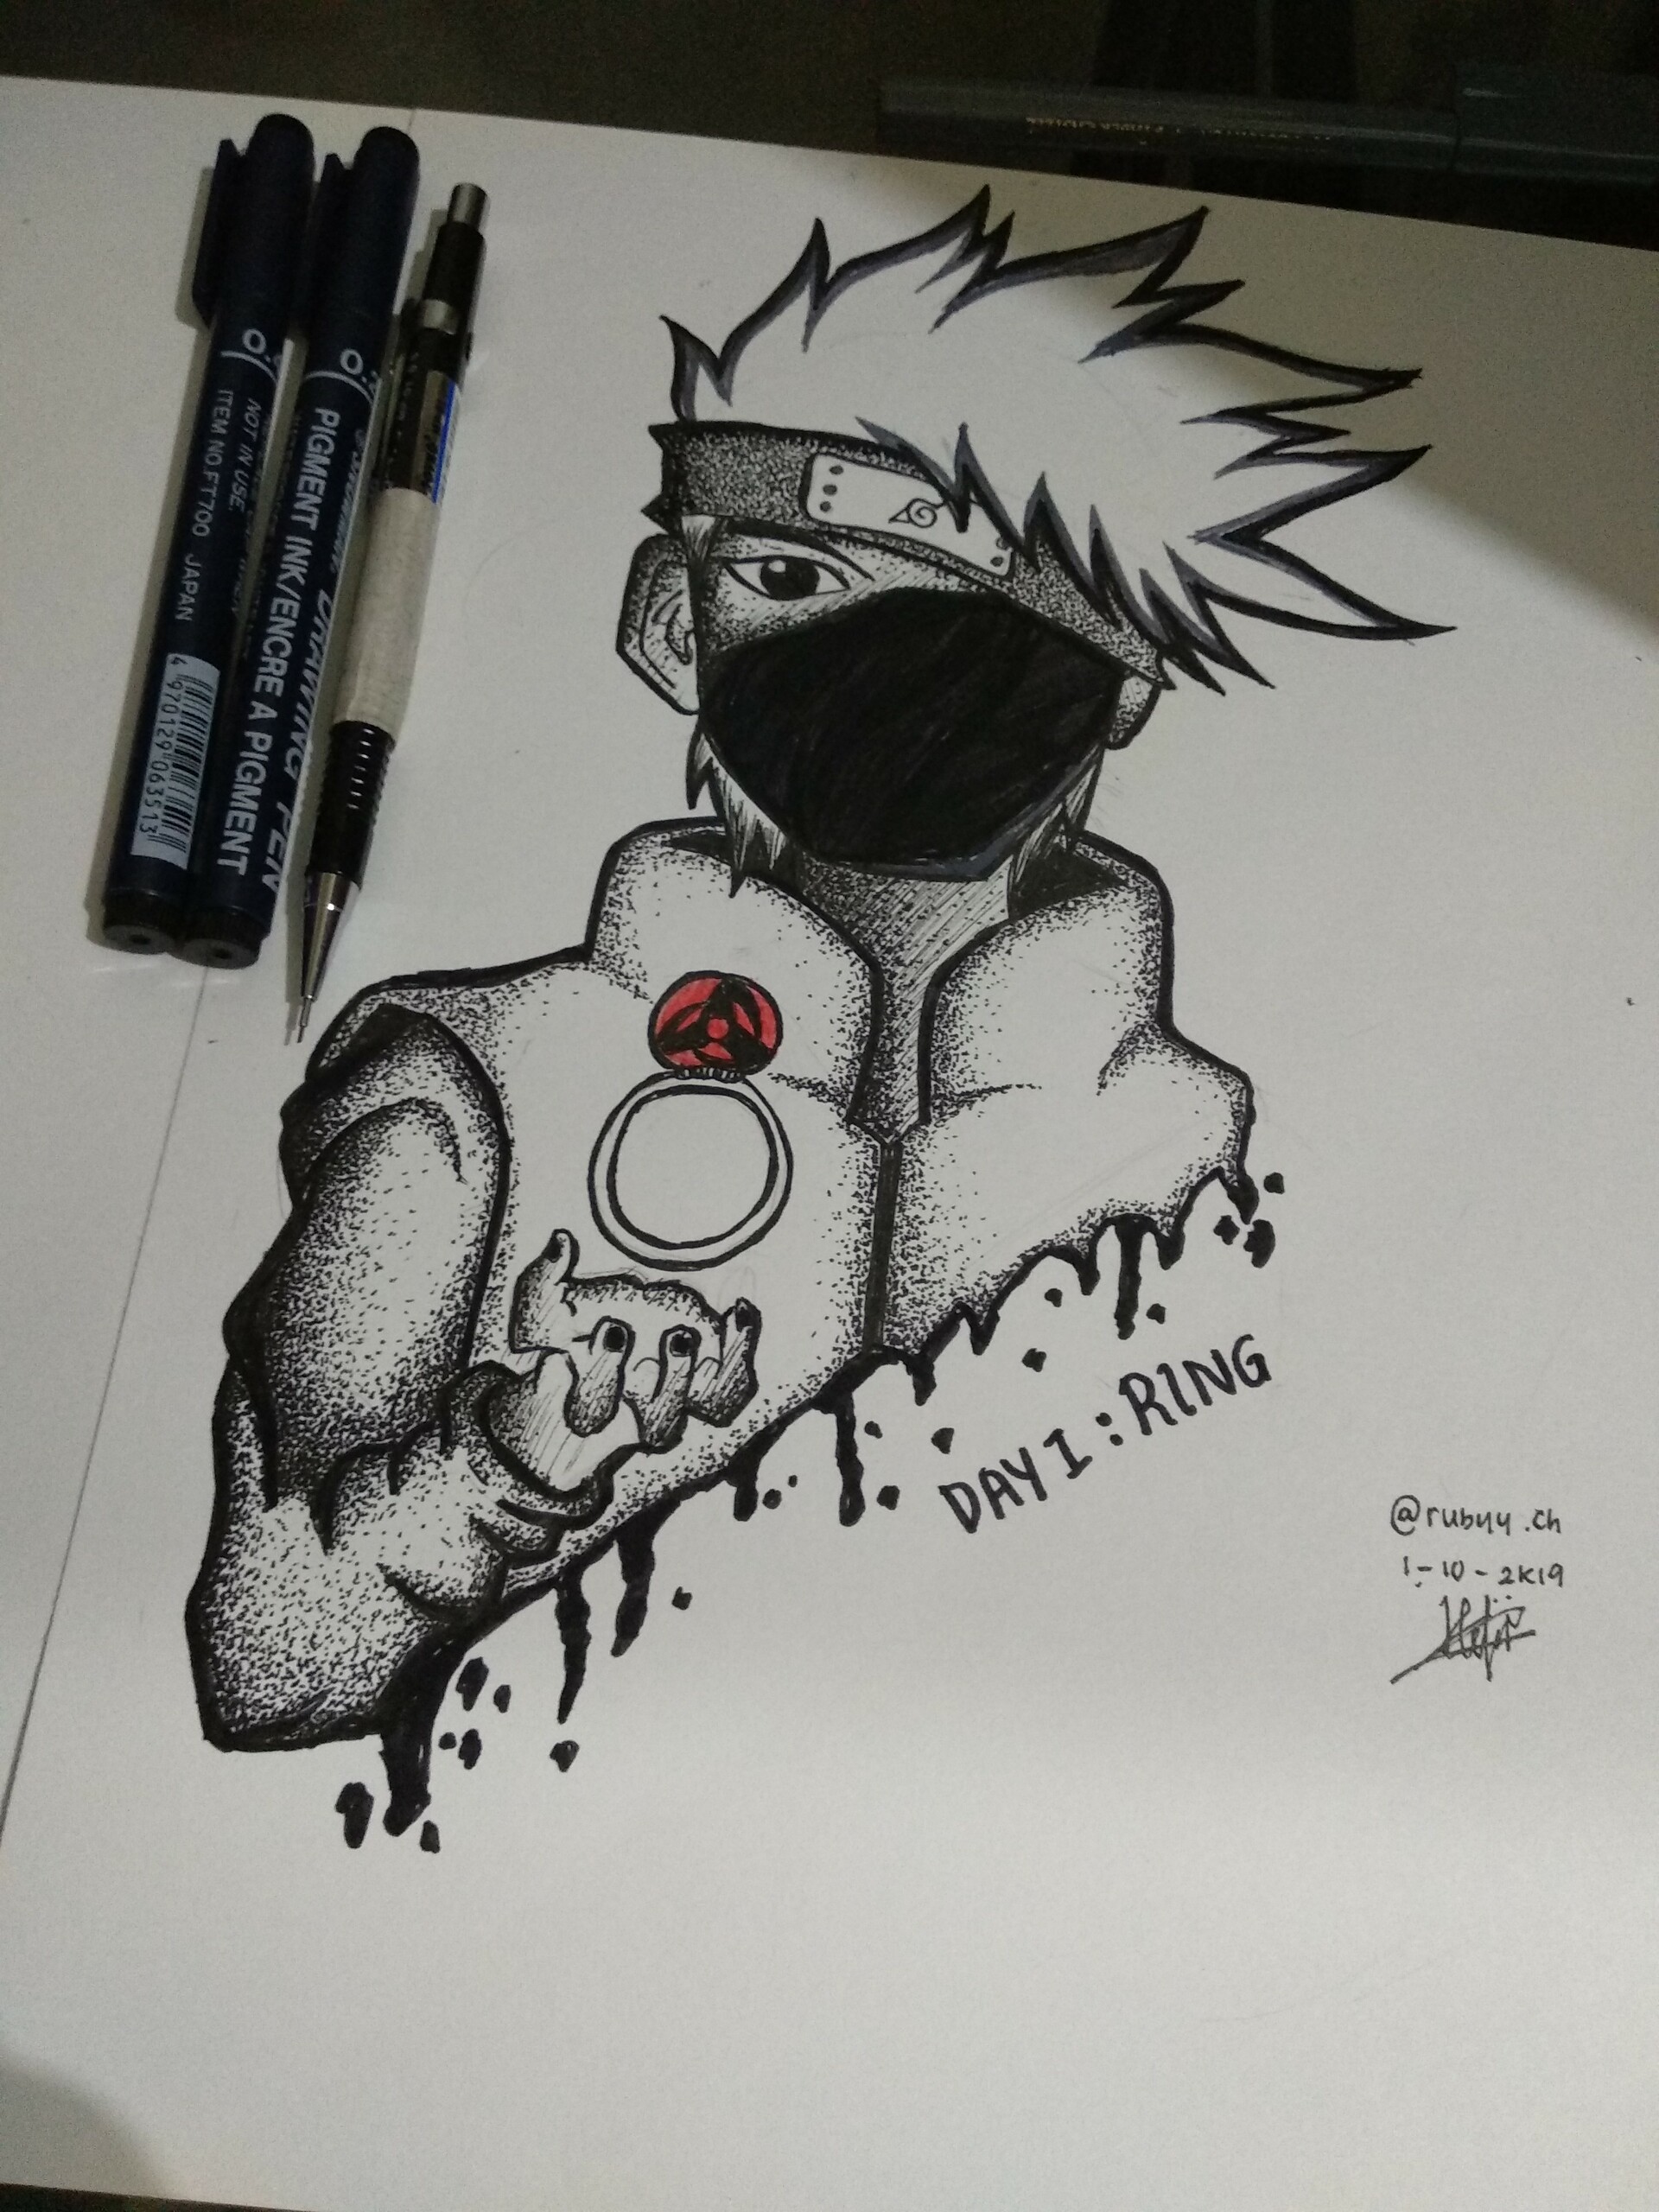 ArtStation - Inktober Naruto drawing